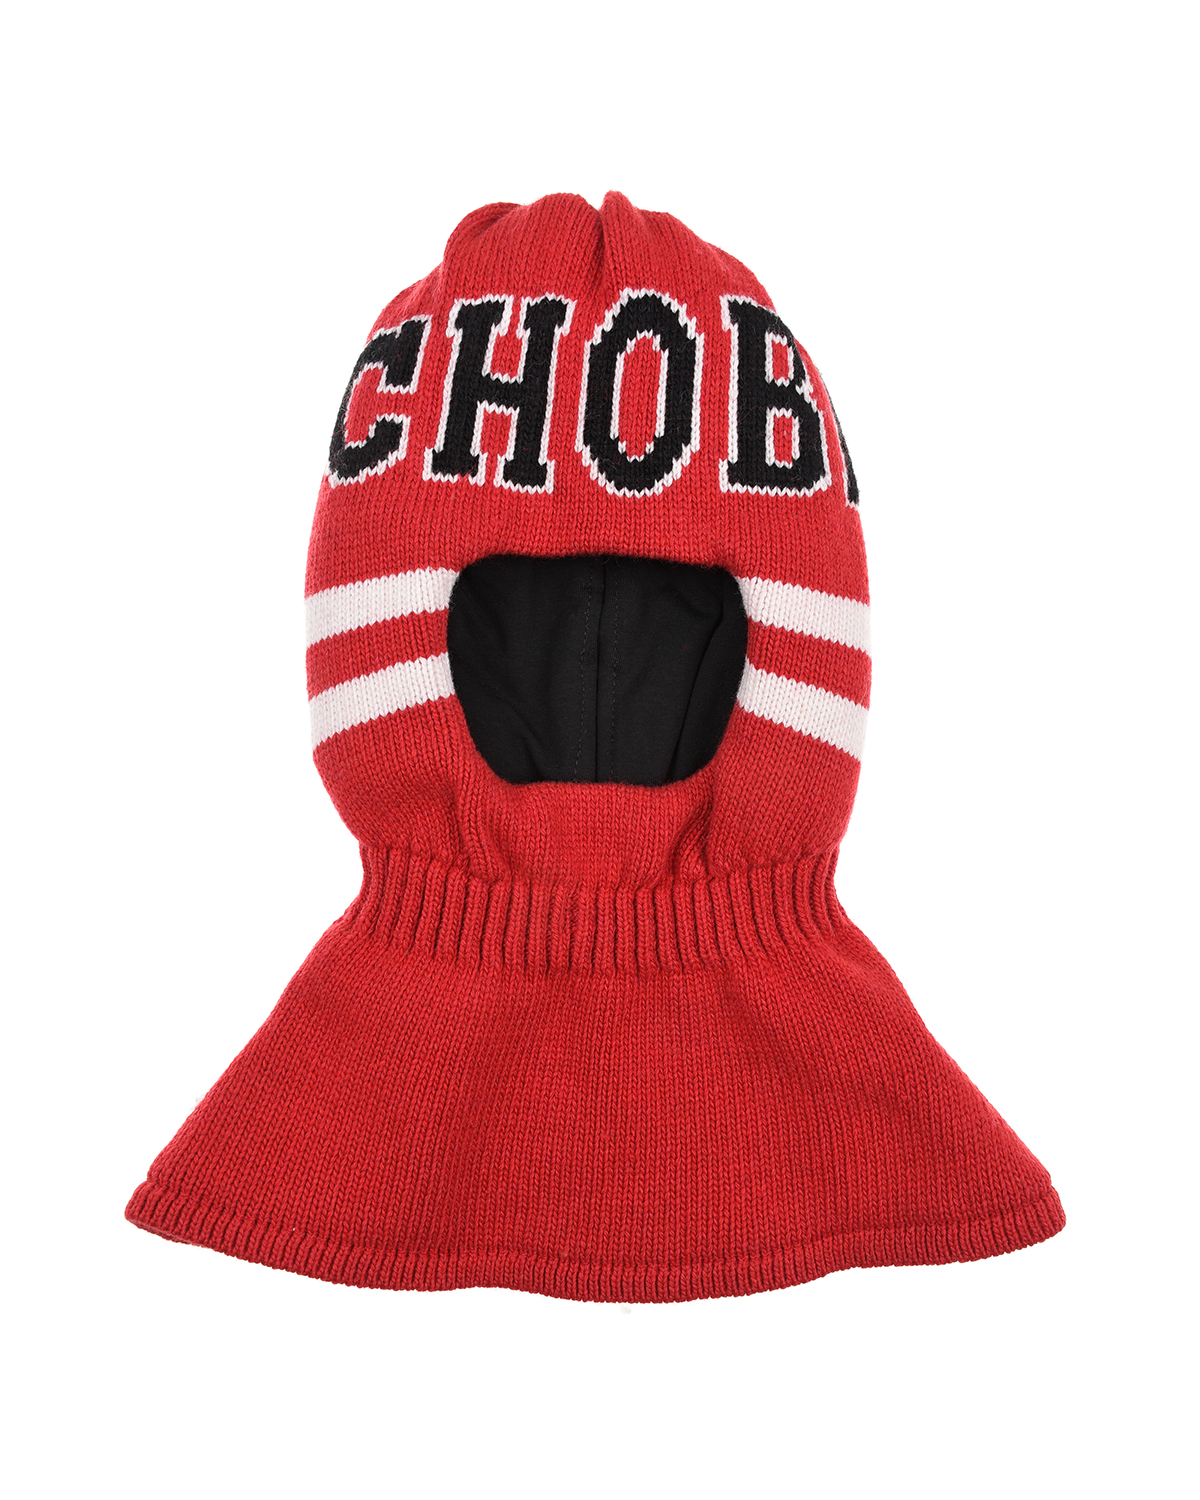 Красная шапка-шлем с белыми полосами Chobi детская, размер 53, цвет красный